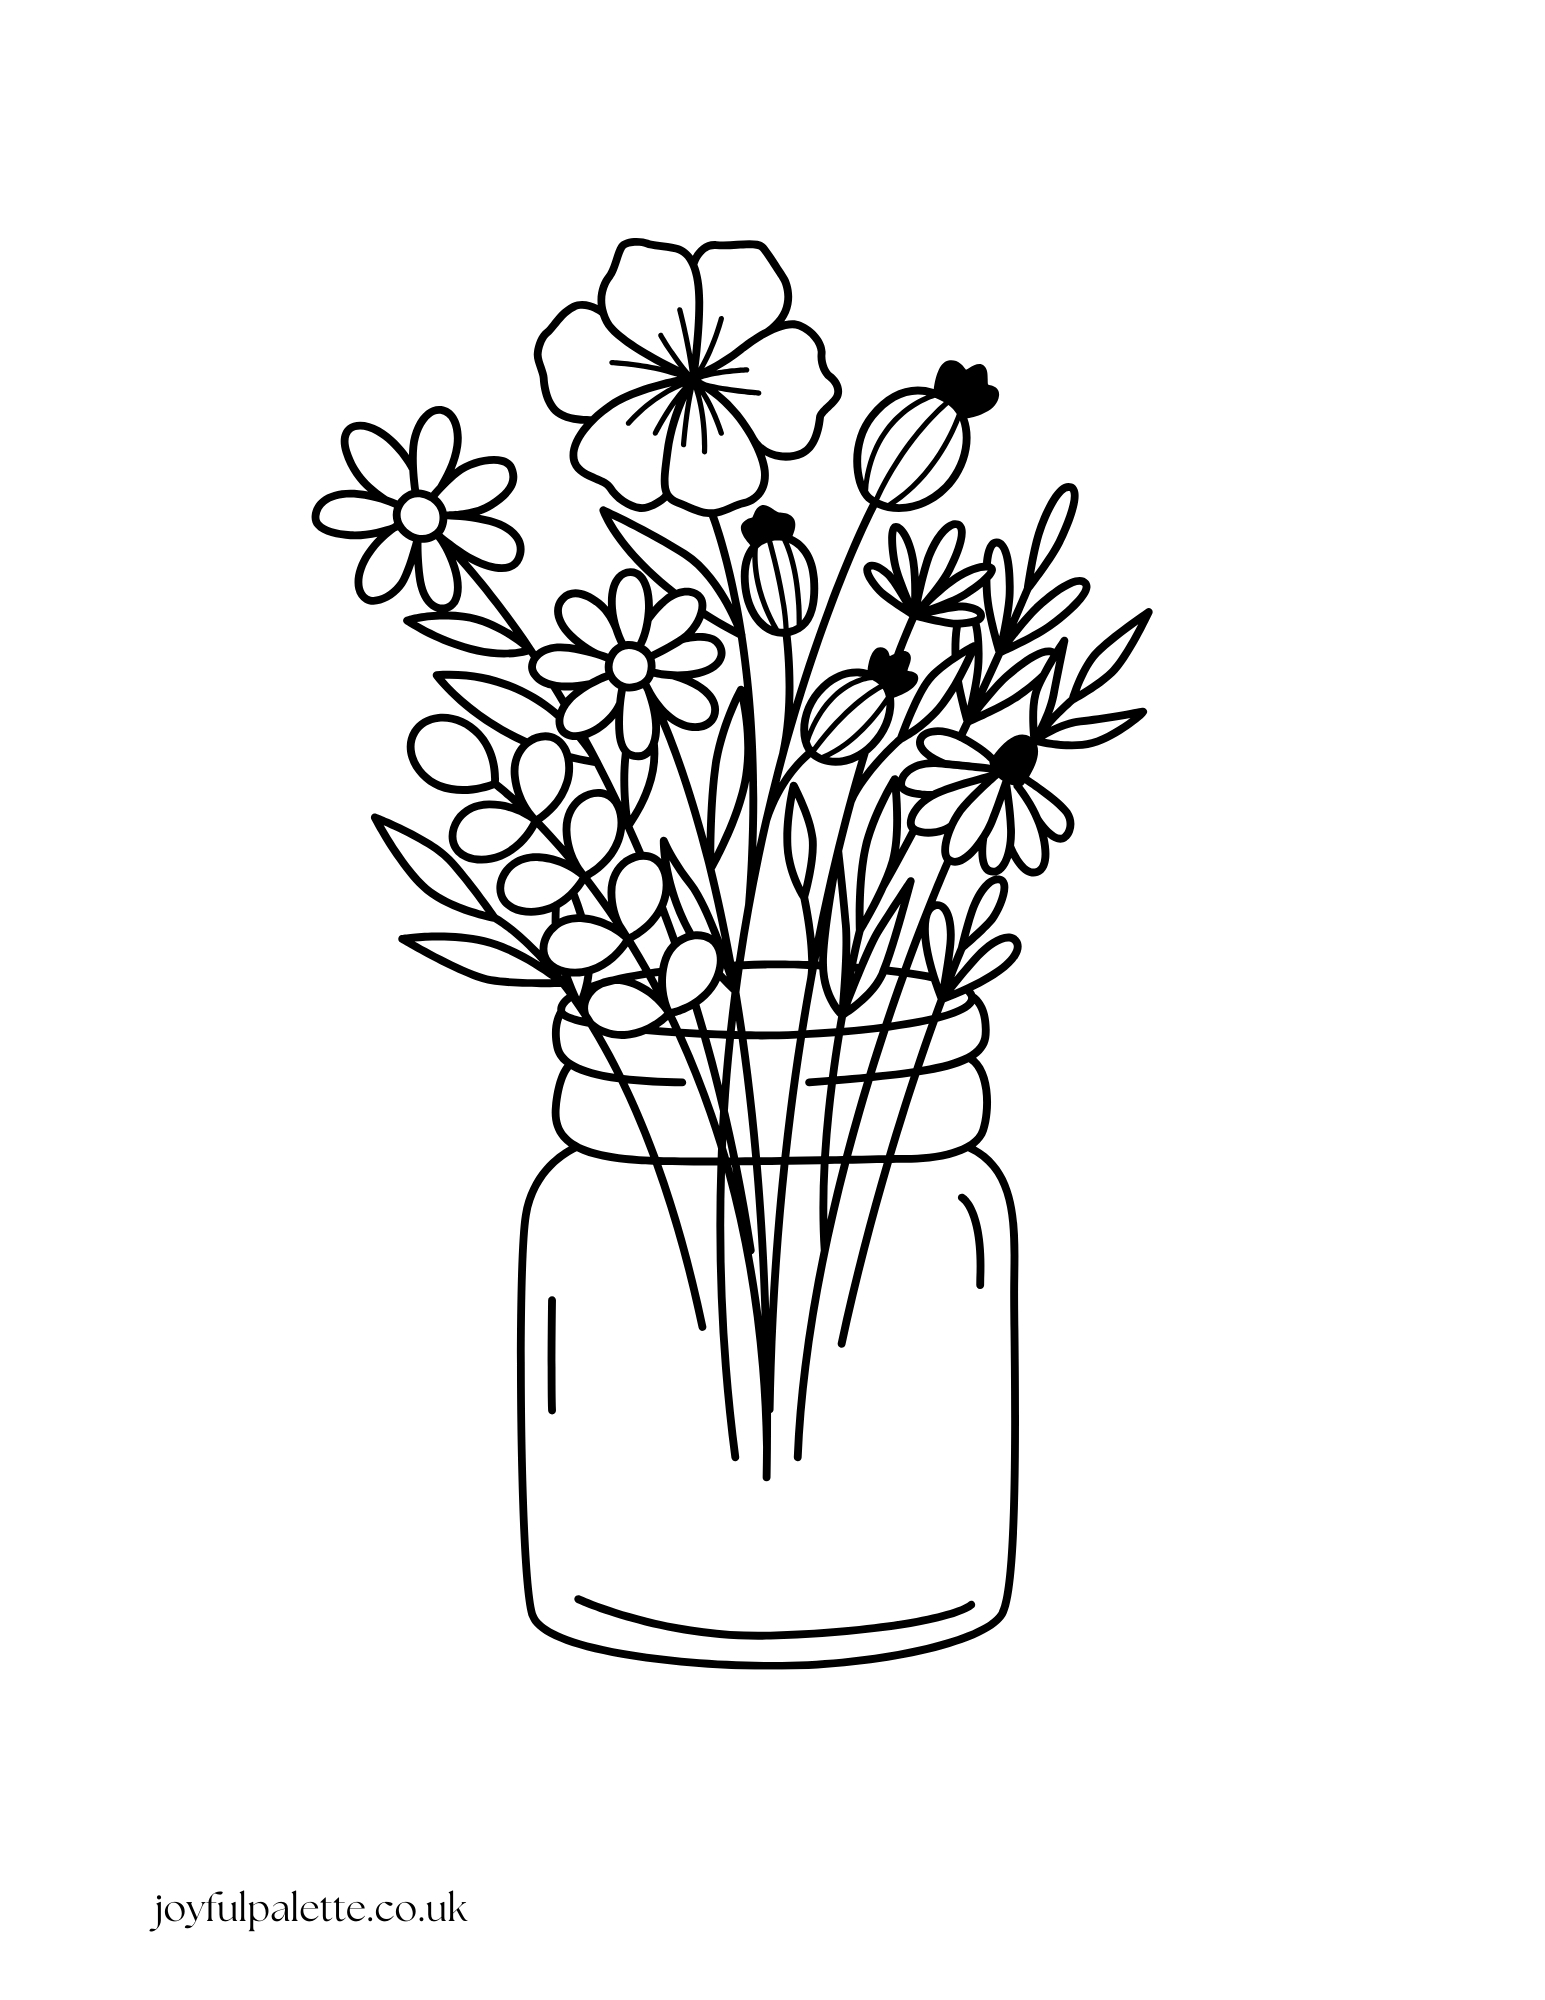 Flower Bouquet in a Jar